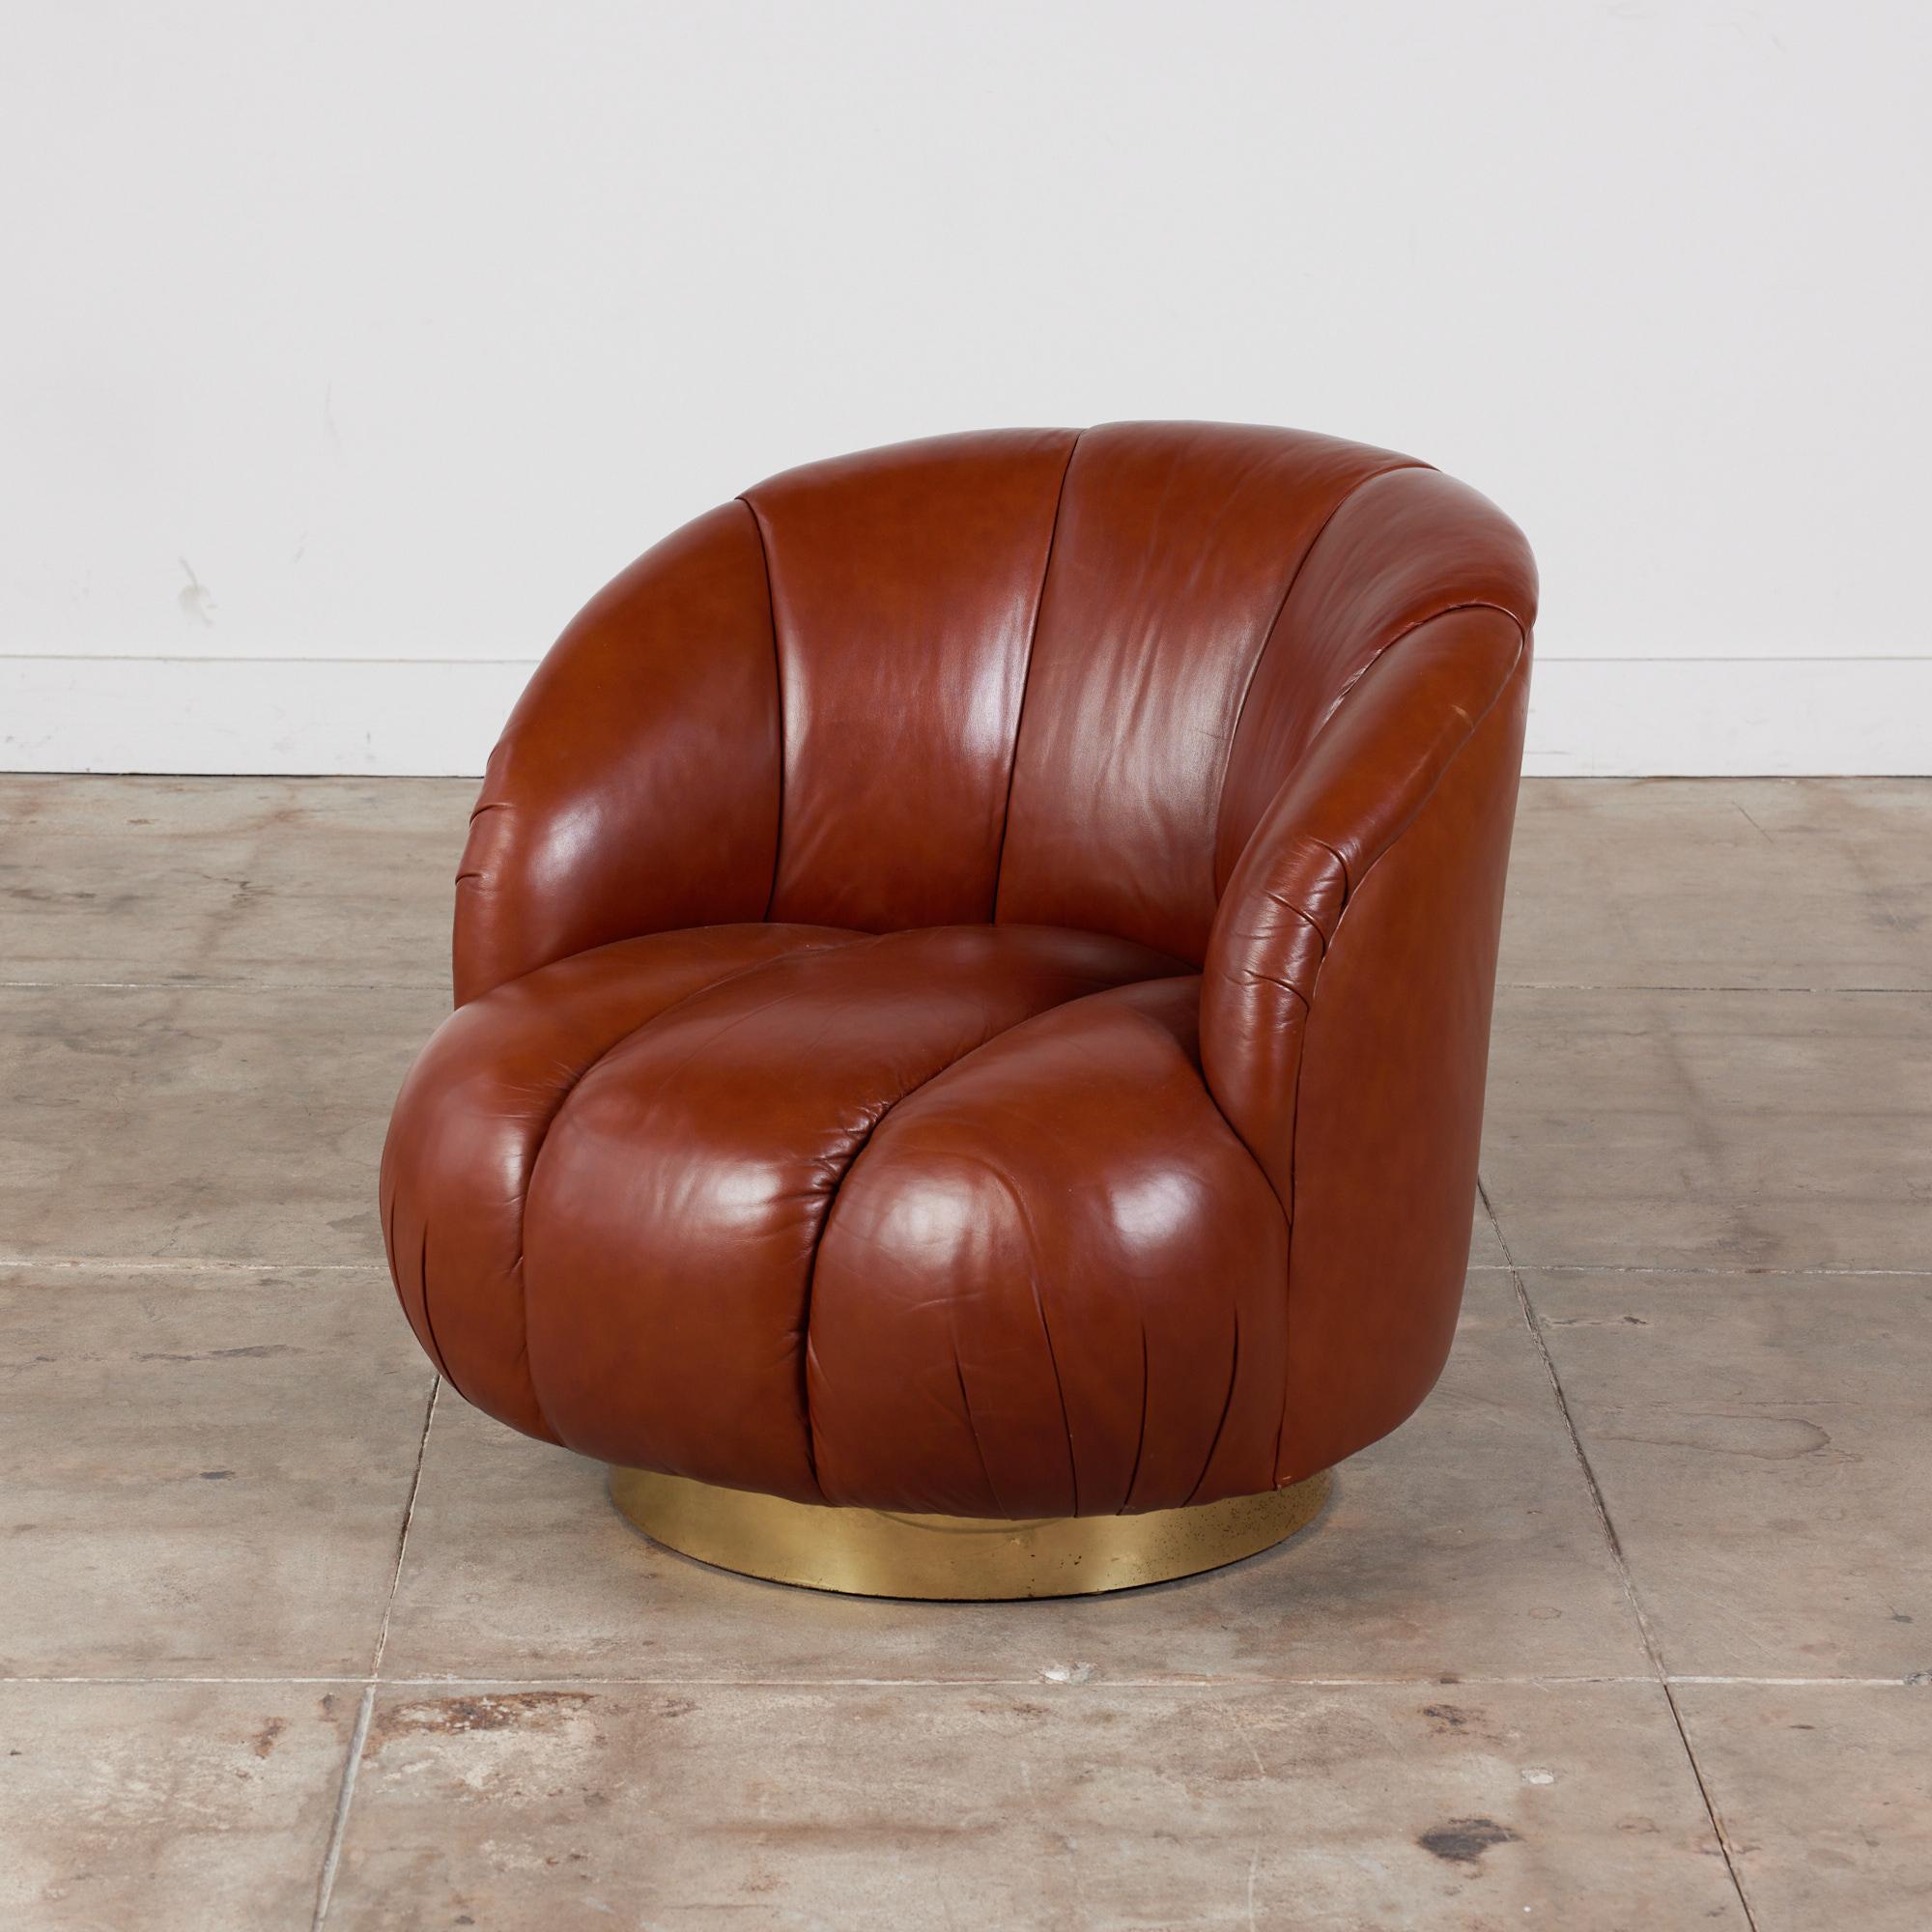 Fauteuil pivotant de style Karl Springer, c.1980. Le fauteuil présente des courbes douces sur toute sa surface et est recouvert d'un riche cuir brun touffeté. Le dossier arrondi du siège offre confort et style. La chaise repose sur une base